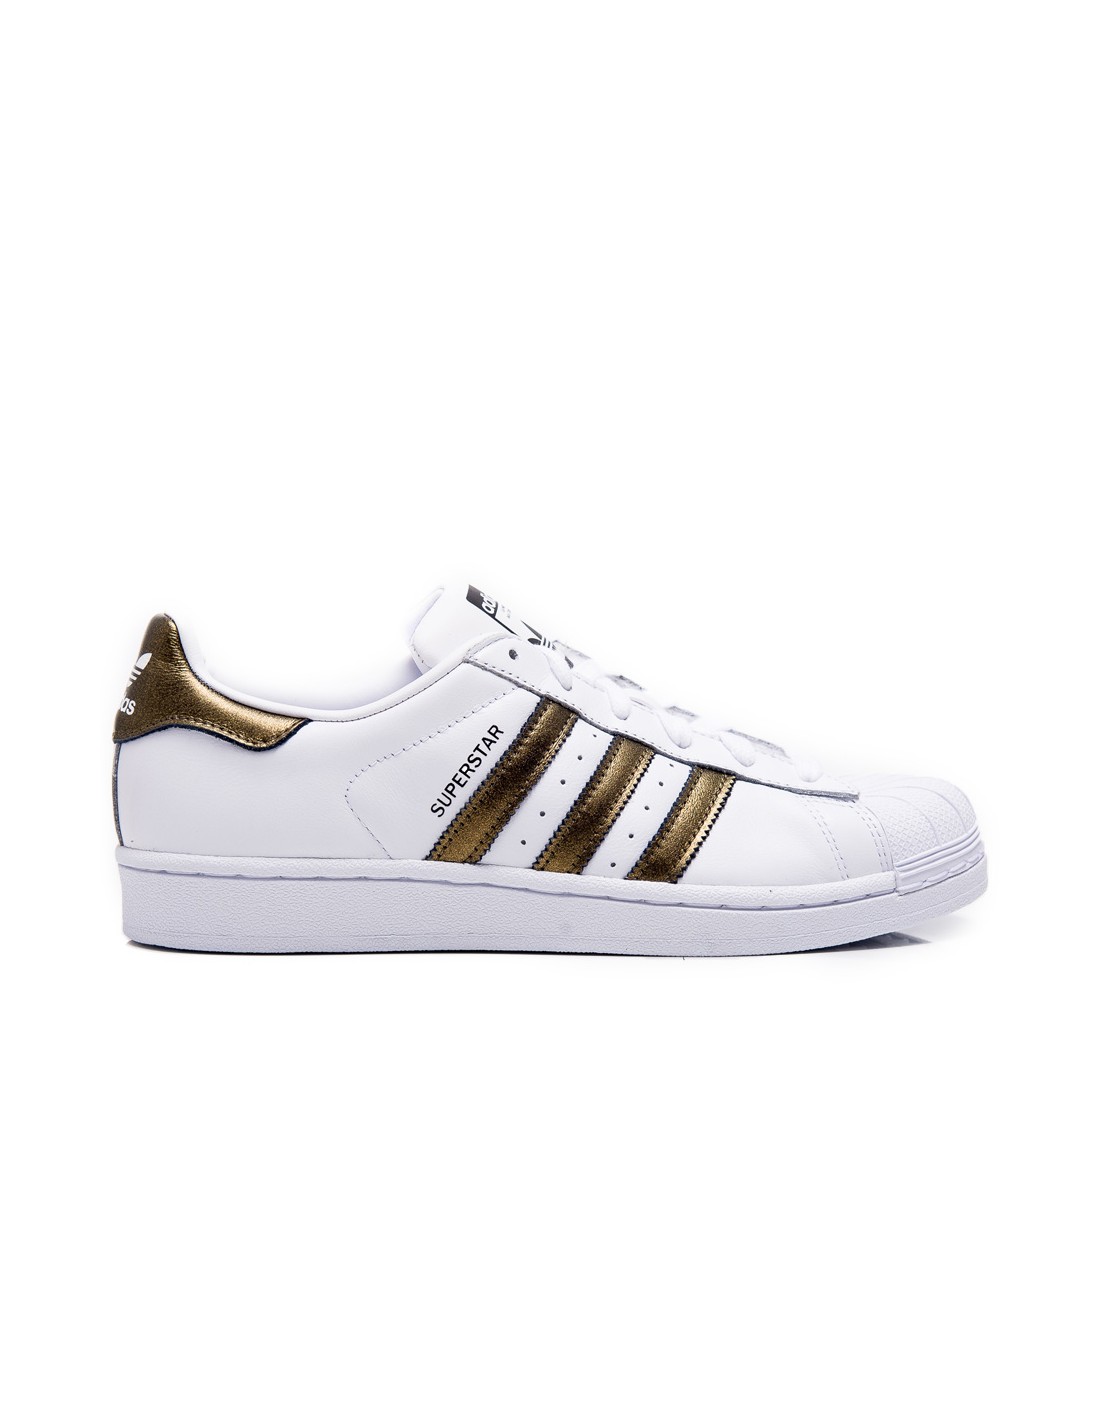 Adidas Originals Superstar White/bronze B41513| urbanfashion.gr